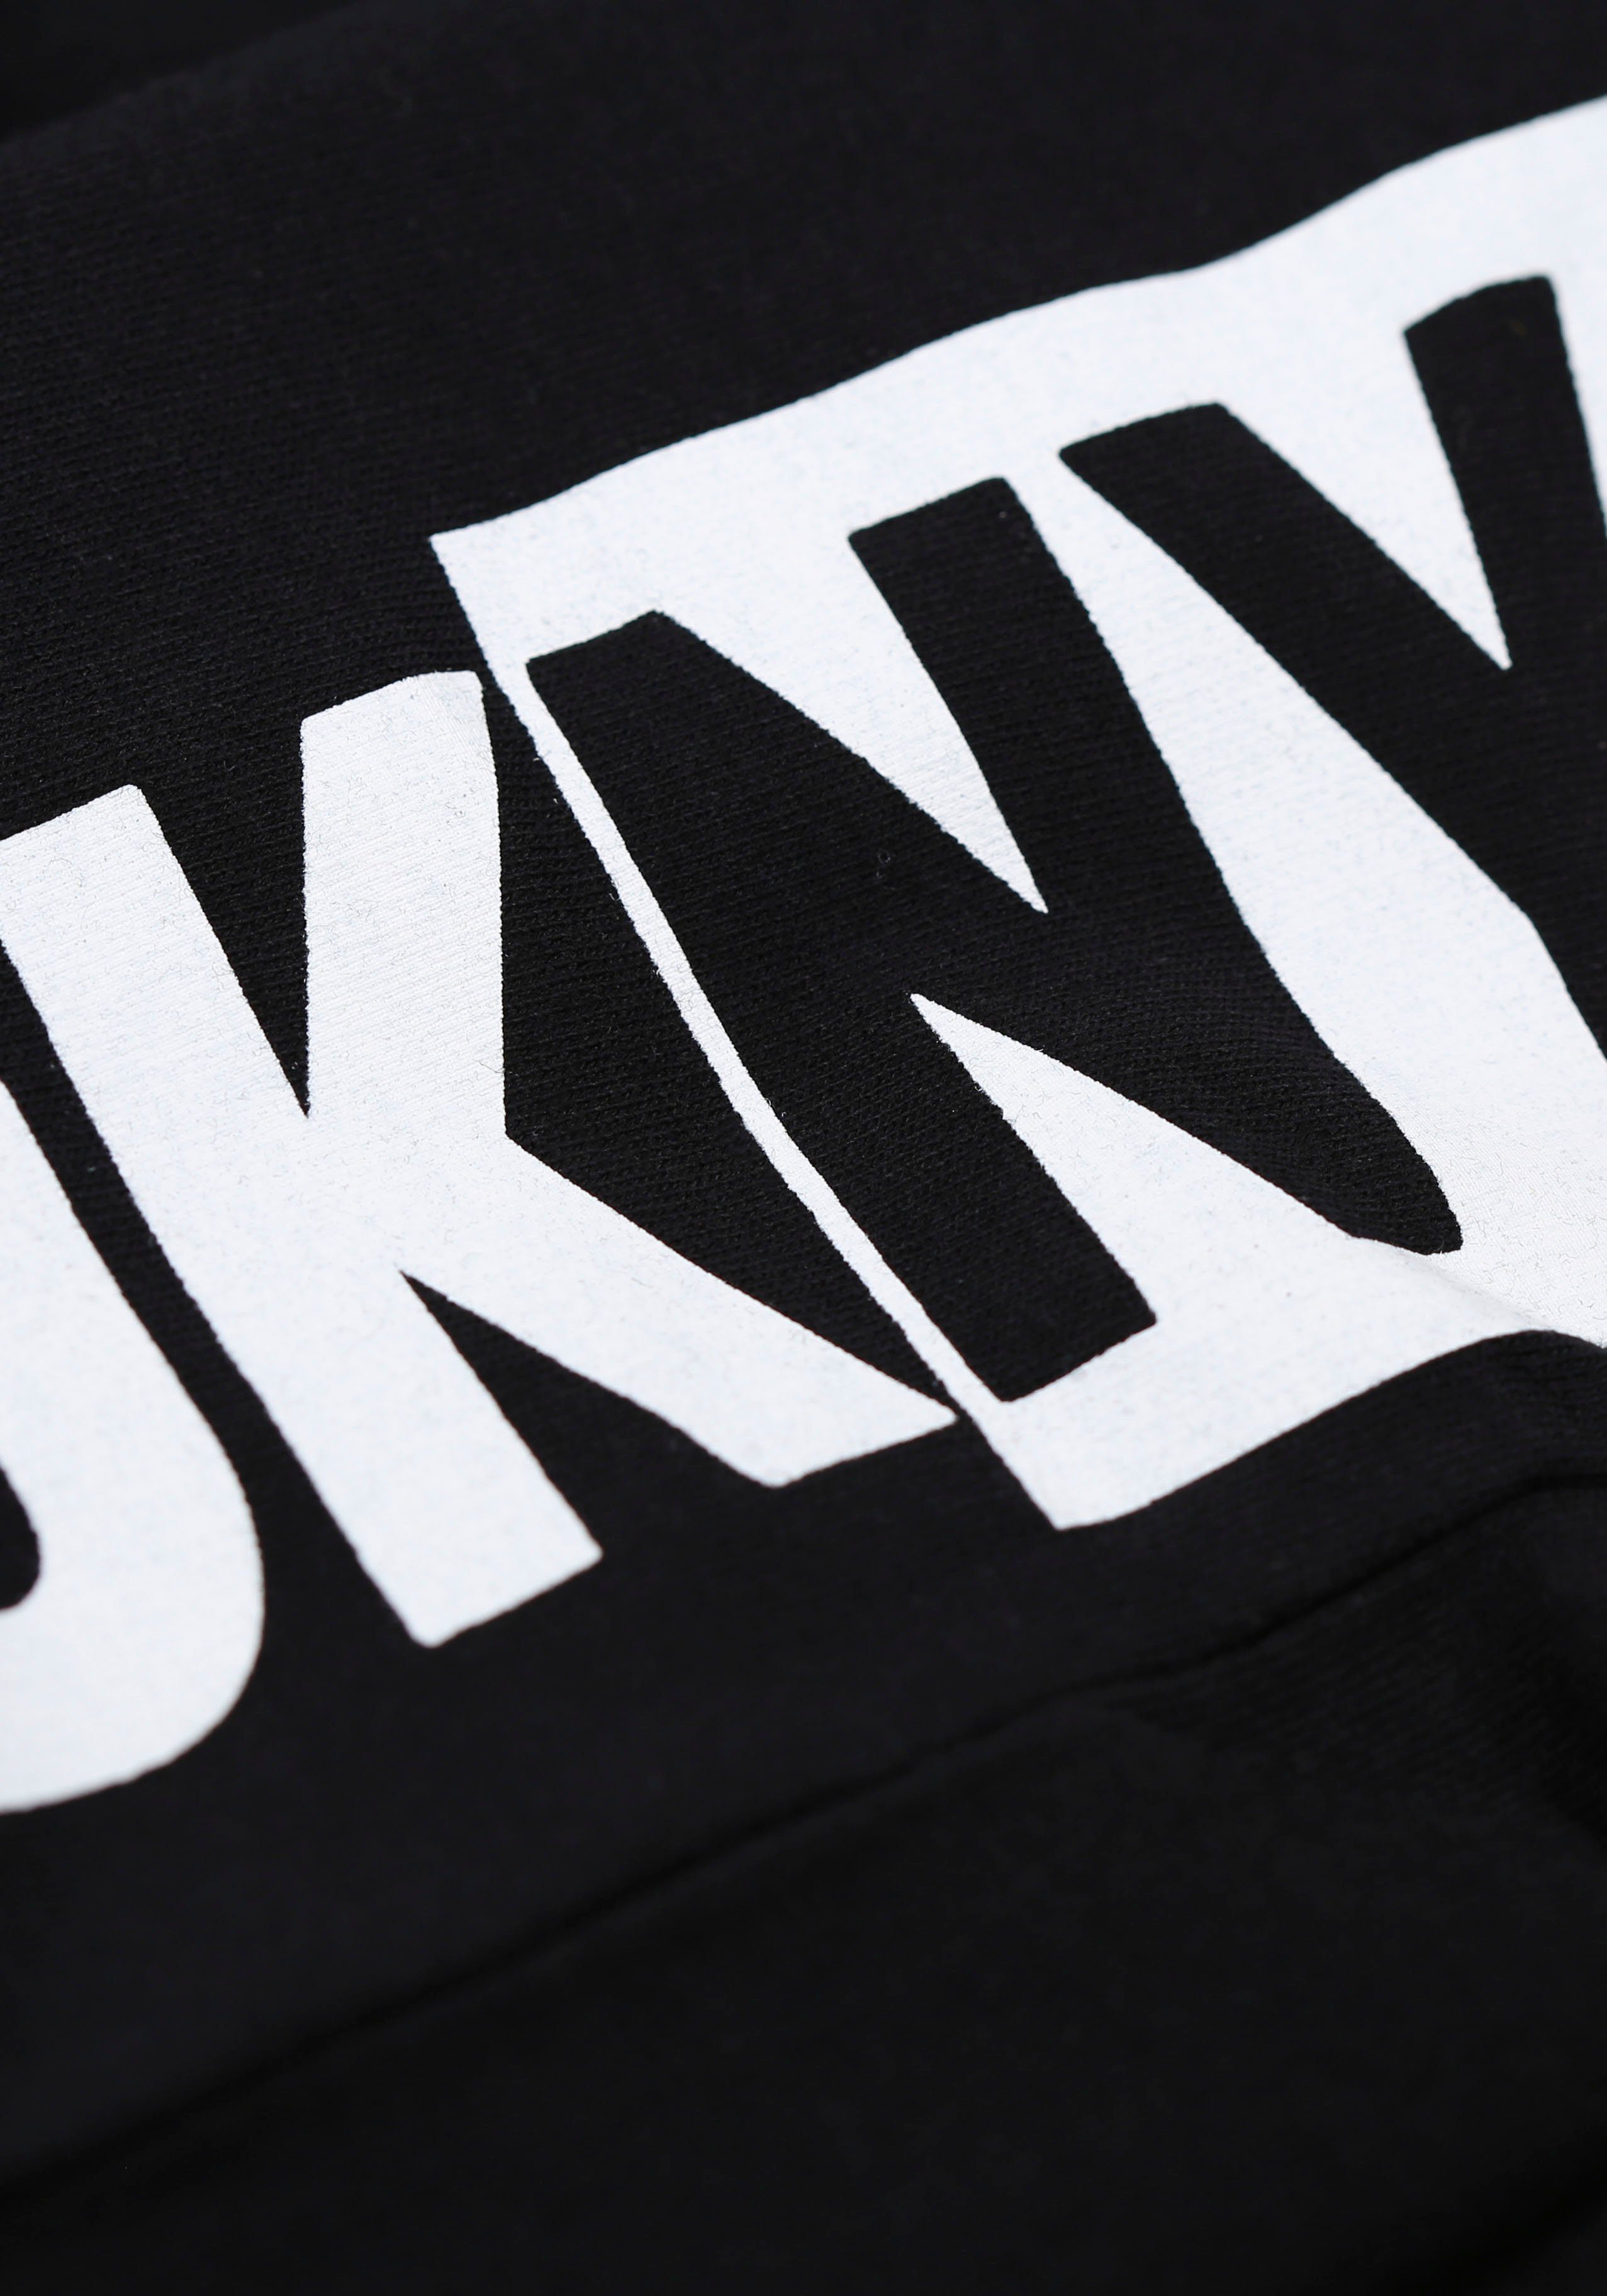 mit Logo-Bündchen DKNY Loungepants elastischem black